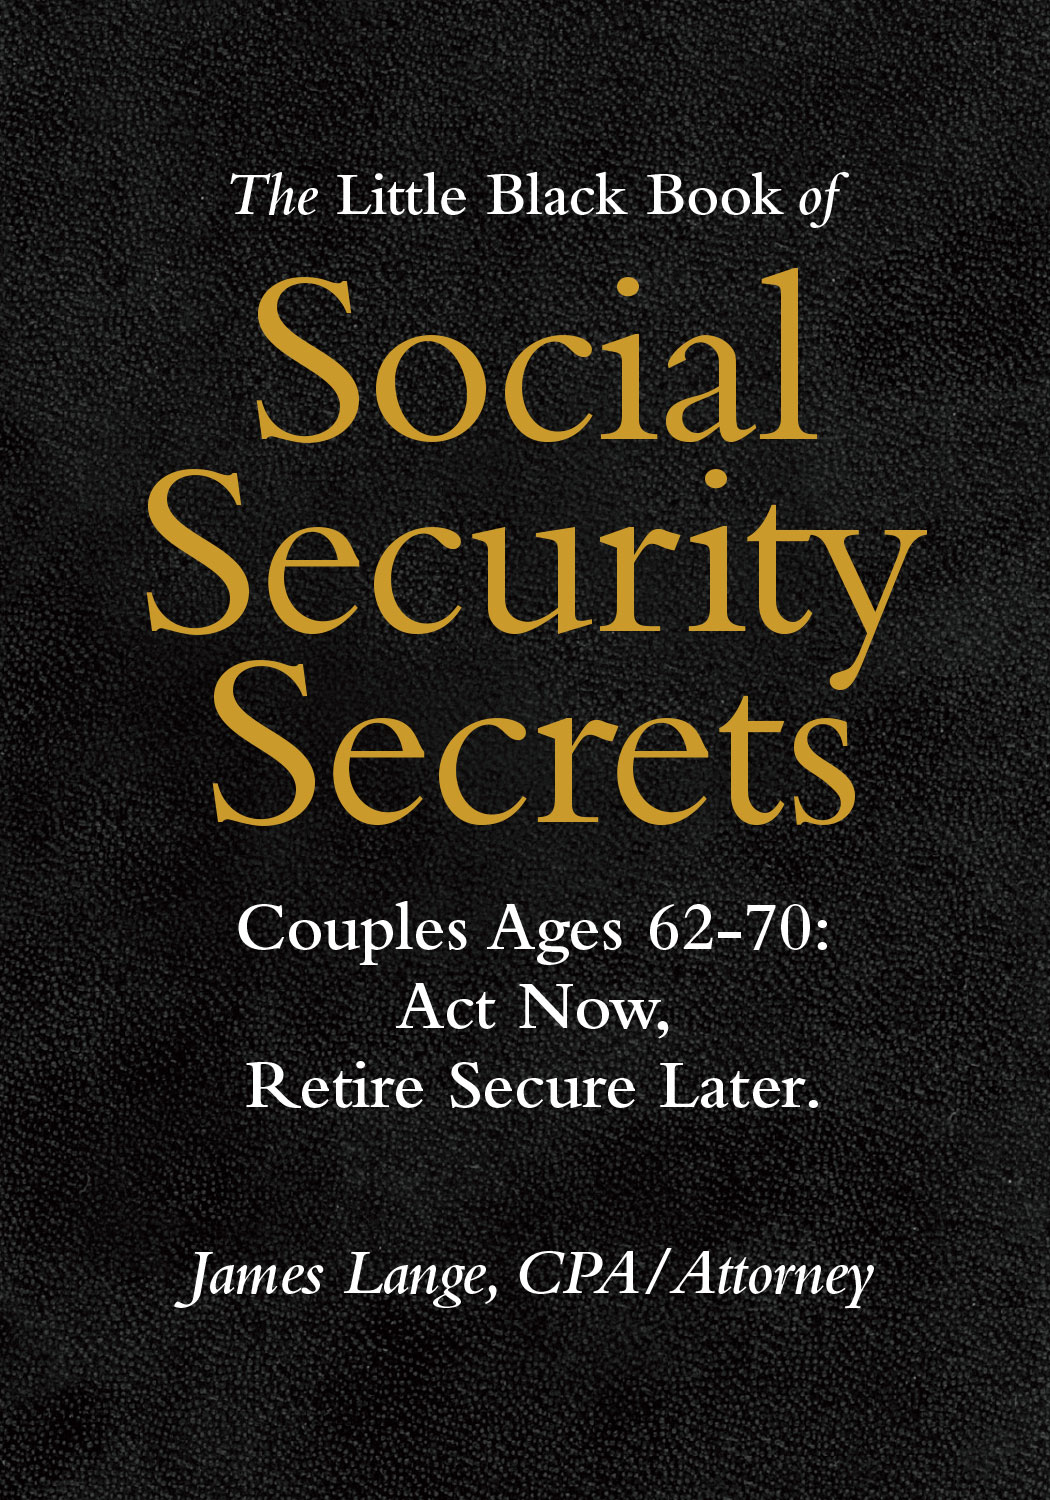 The Little Black Book of Social Security Secrets, James Lange